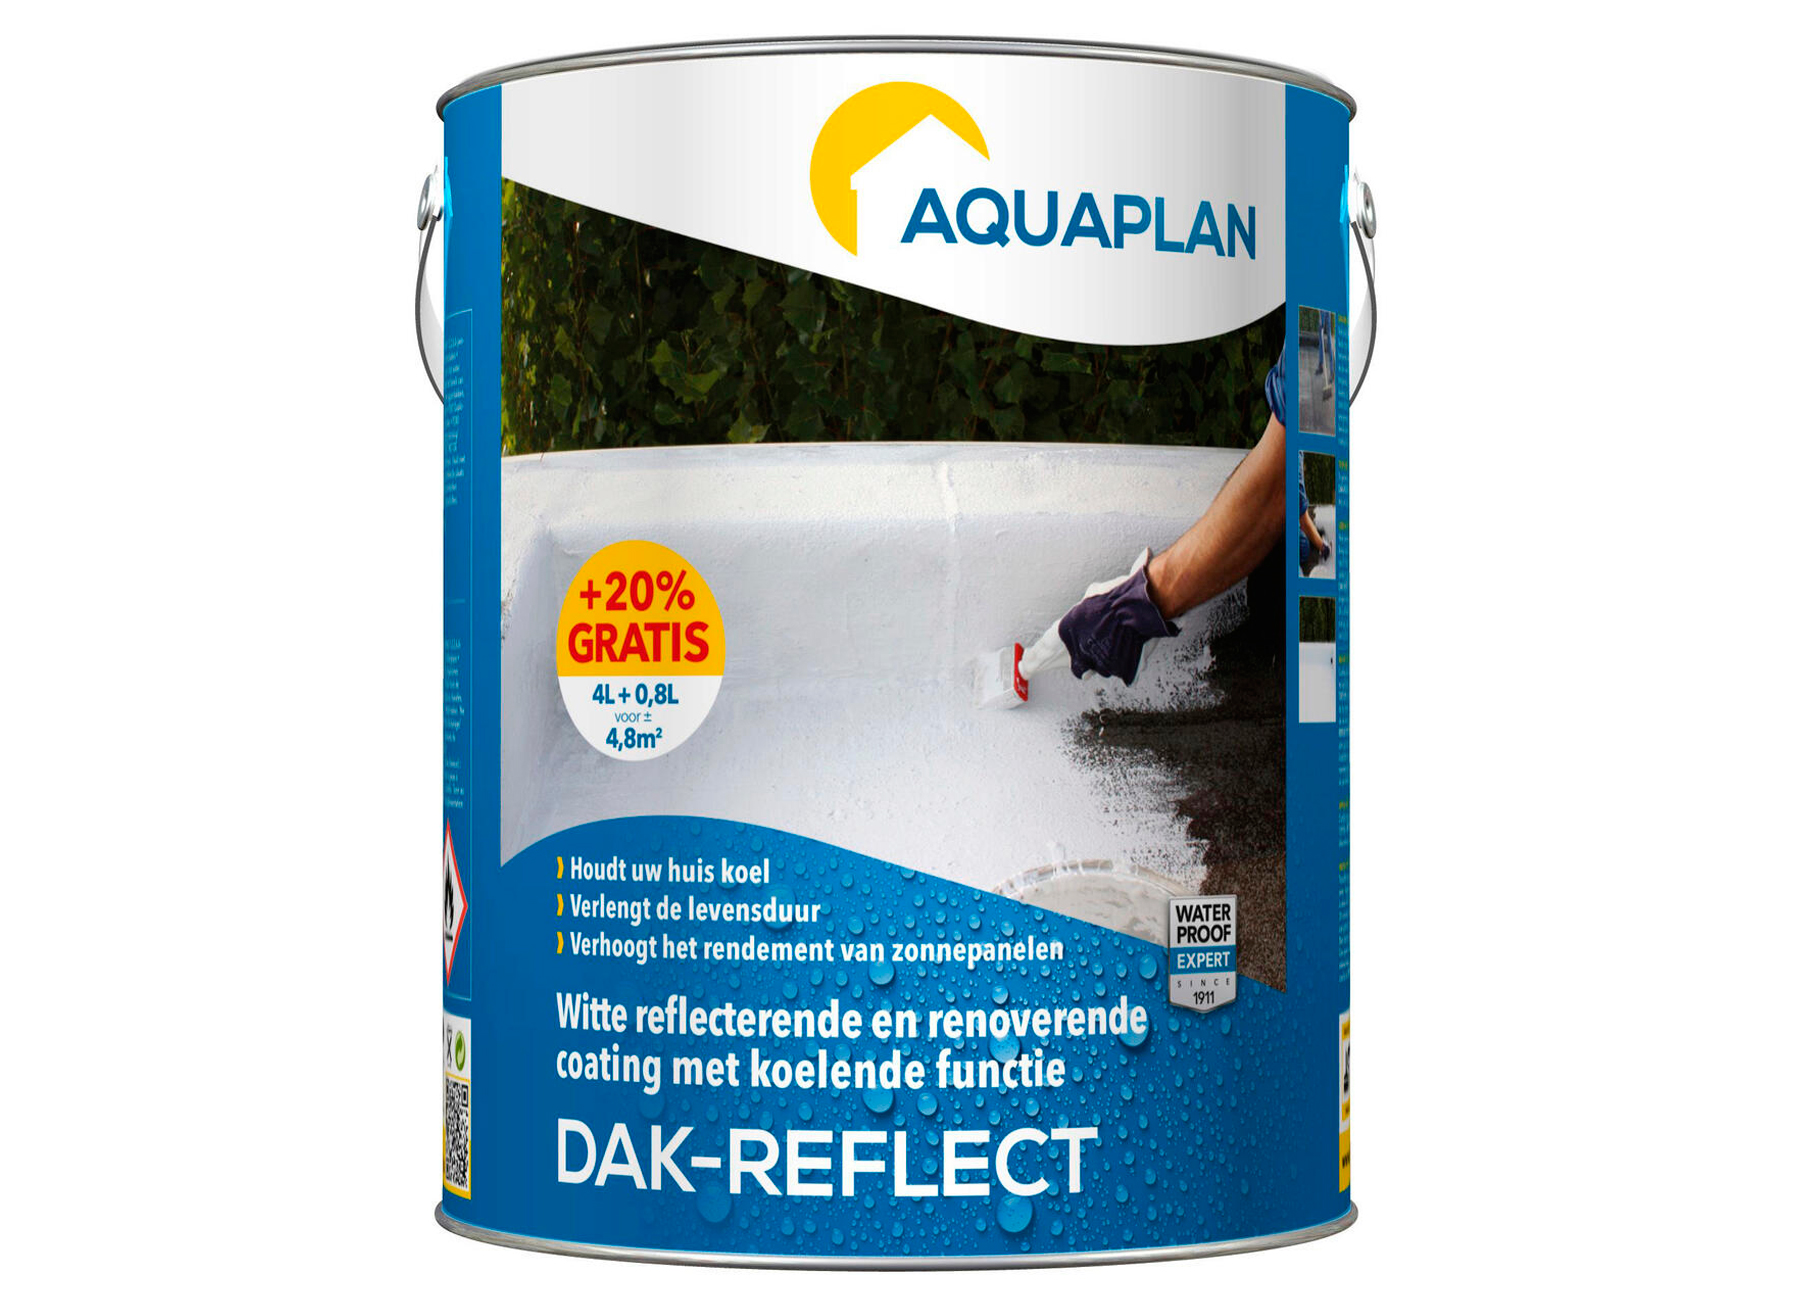 AQUAPLAN DAK-REFLECT 4L + 20%